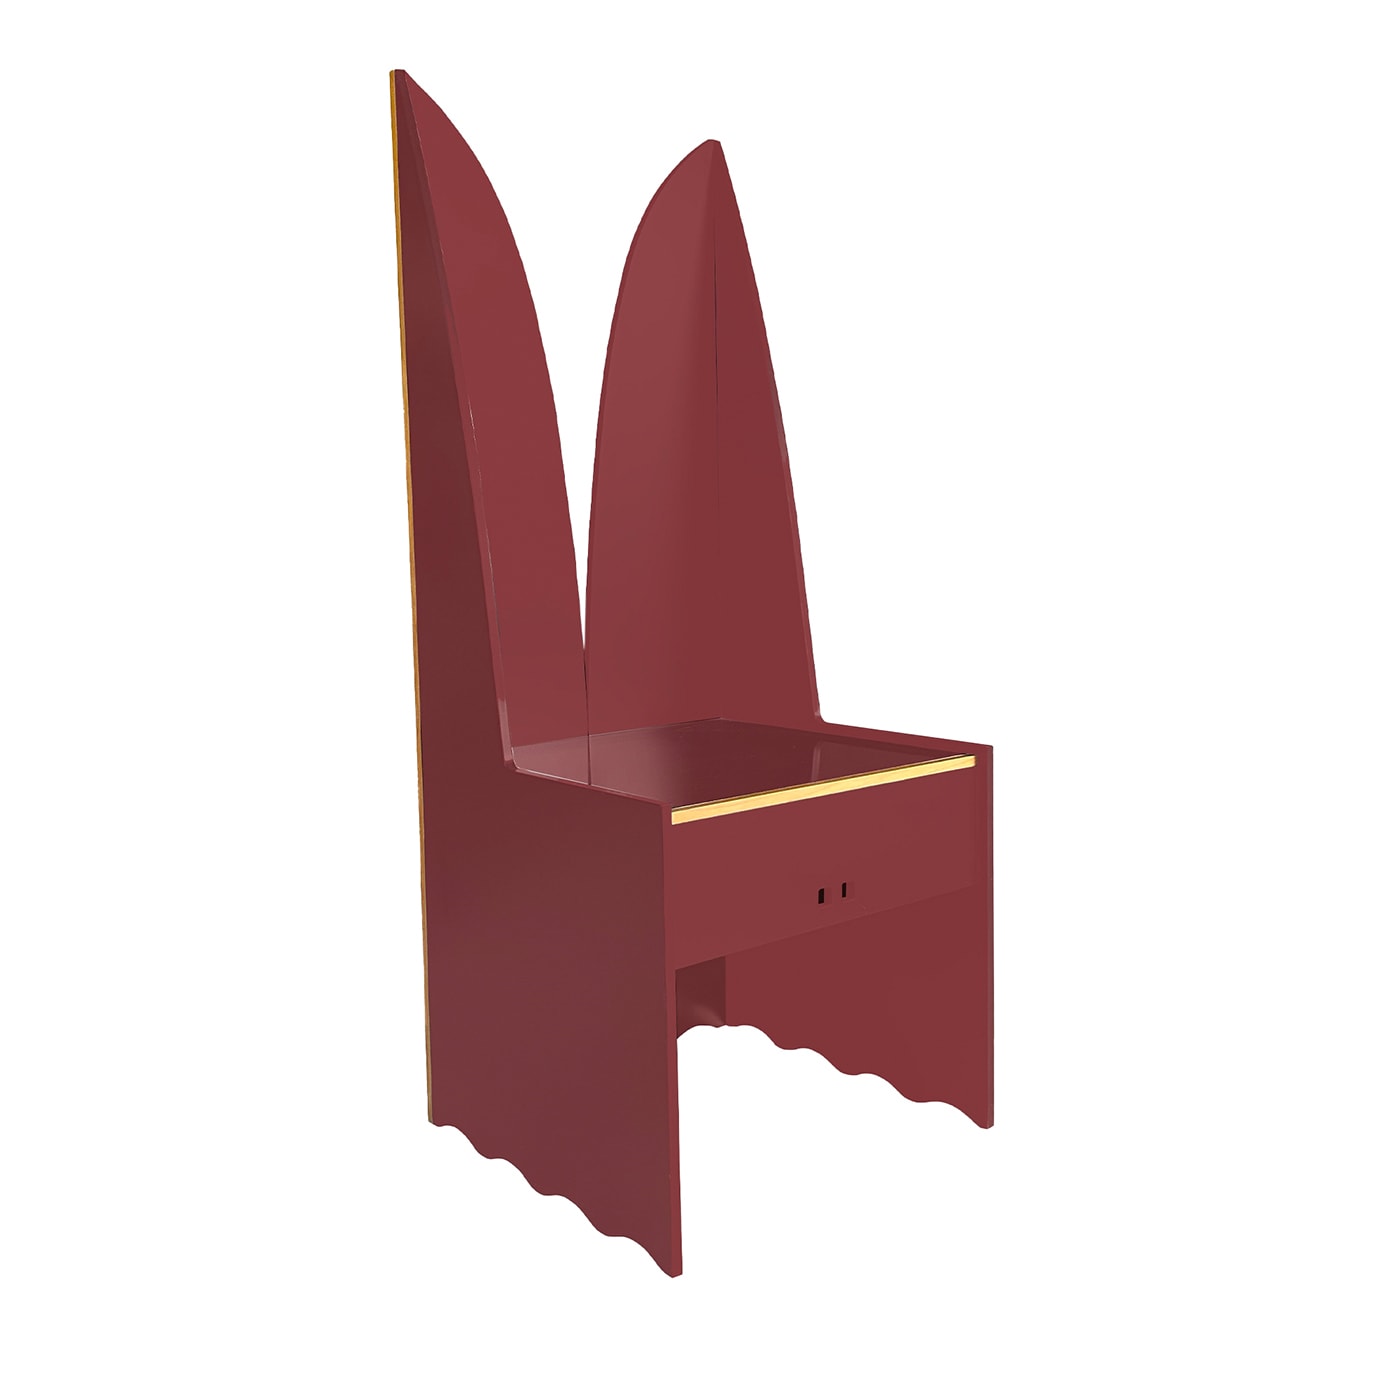 Castelvecchio Red Chair Limited Edition by Ferdinando Meccani - Meccani Design